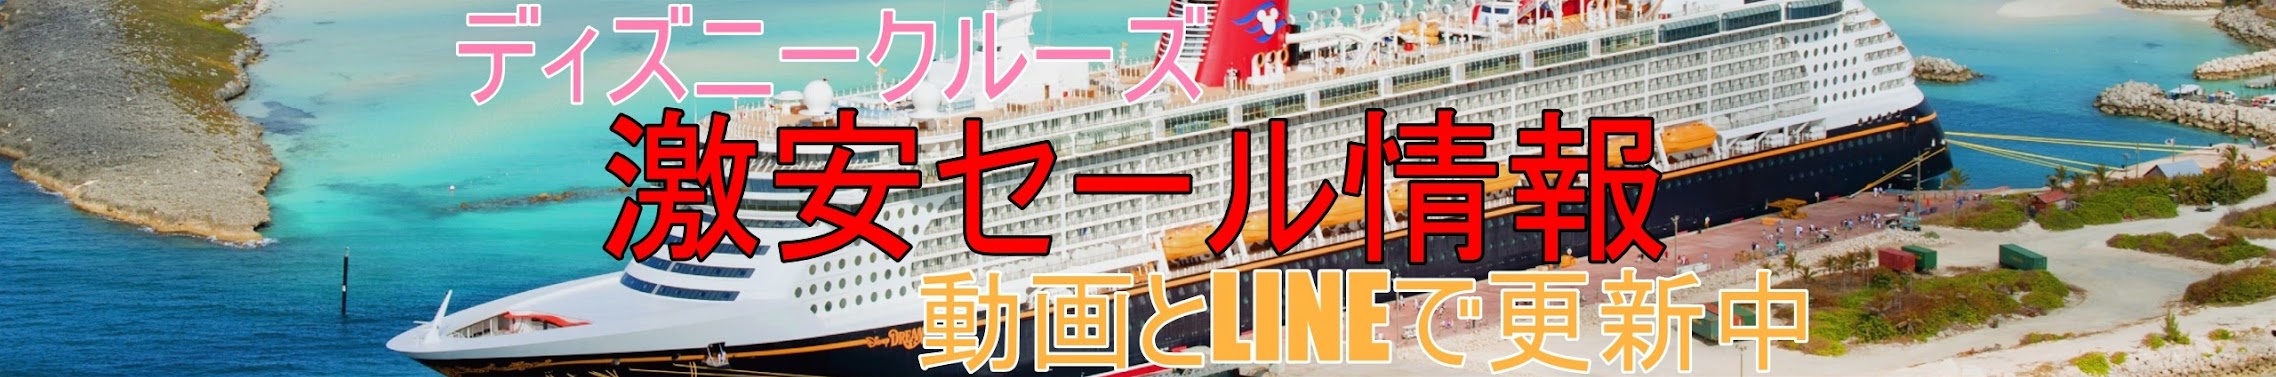 ディズニークルーズ料金 ラインで船の値段と日本ツアー旅行記ブログ19 Youtube Channel Analytics And Report Powered By Noxinfluencer Mobile